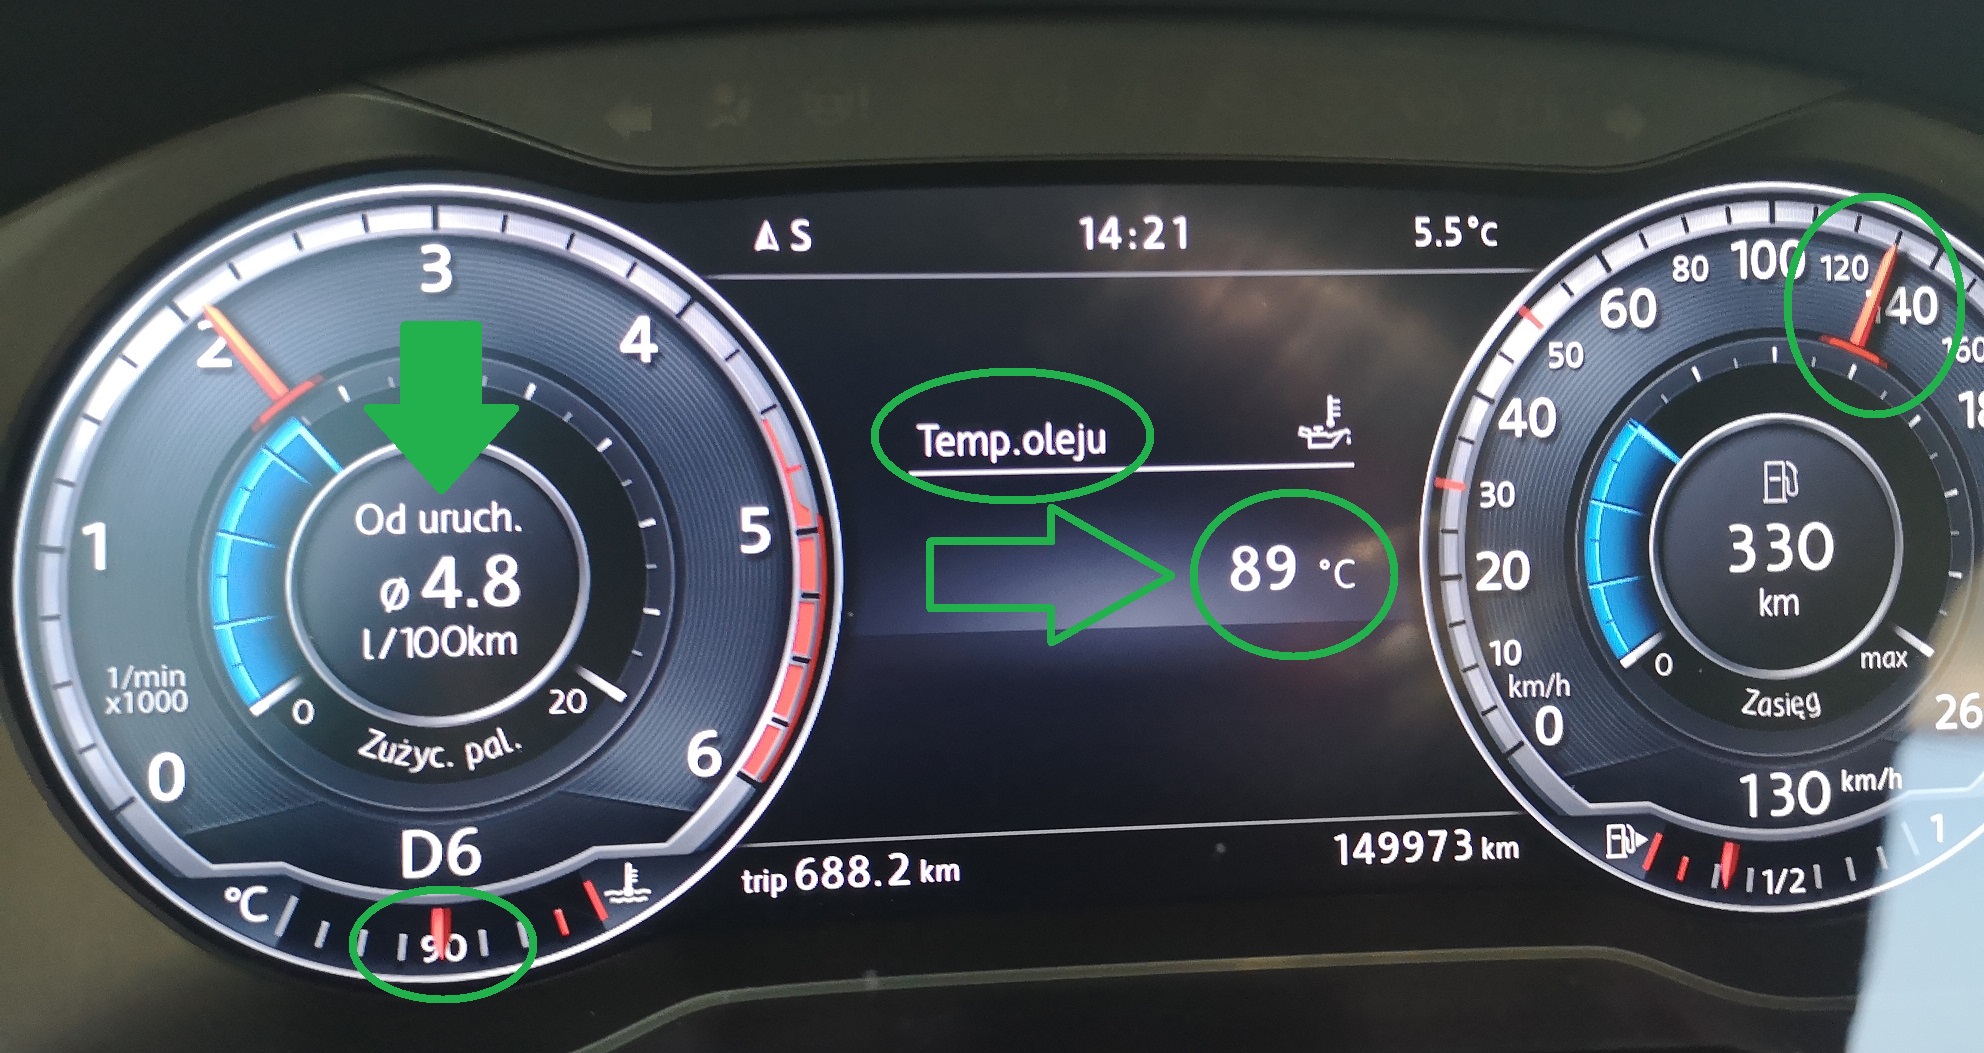 VW Passat 2.0 TDI 150 KM Euro 6 po wykonaniu pakietu silnik + skrzynia biegów DSG - znaczący wzrost sprawności, znaczący spadek oporów podczas jazdy, niesamowity spadek hałasu, zmniejszenie temperatiru oleju i obciążenia silnika, skrzyni biegów, znaczący spadek zużycia paliwa a zarazem bardzo odczuwalny efekt wzrost sprawności, momentu obrotowego i mocy 